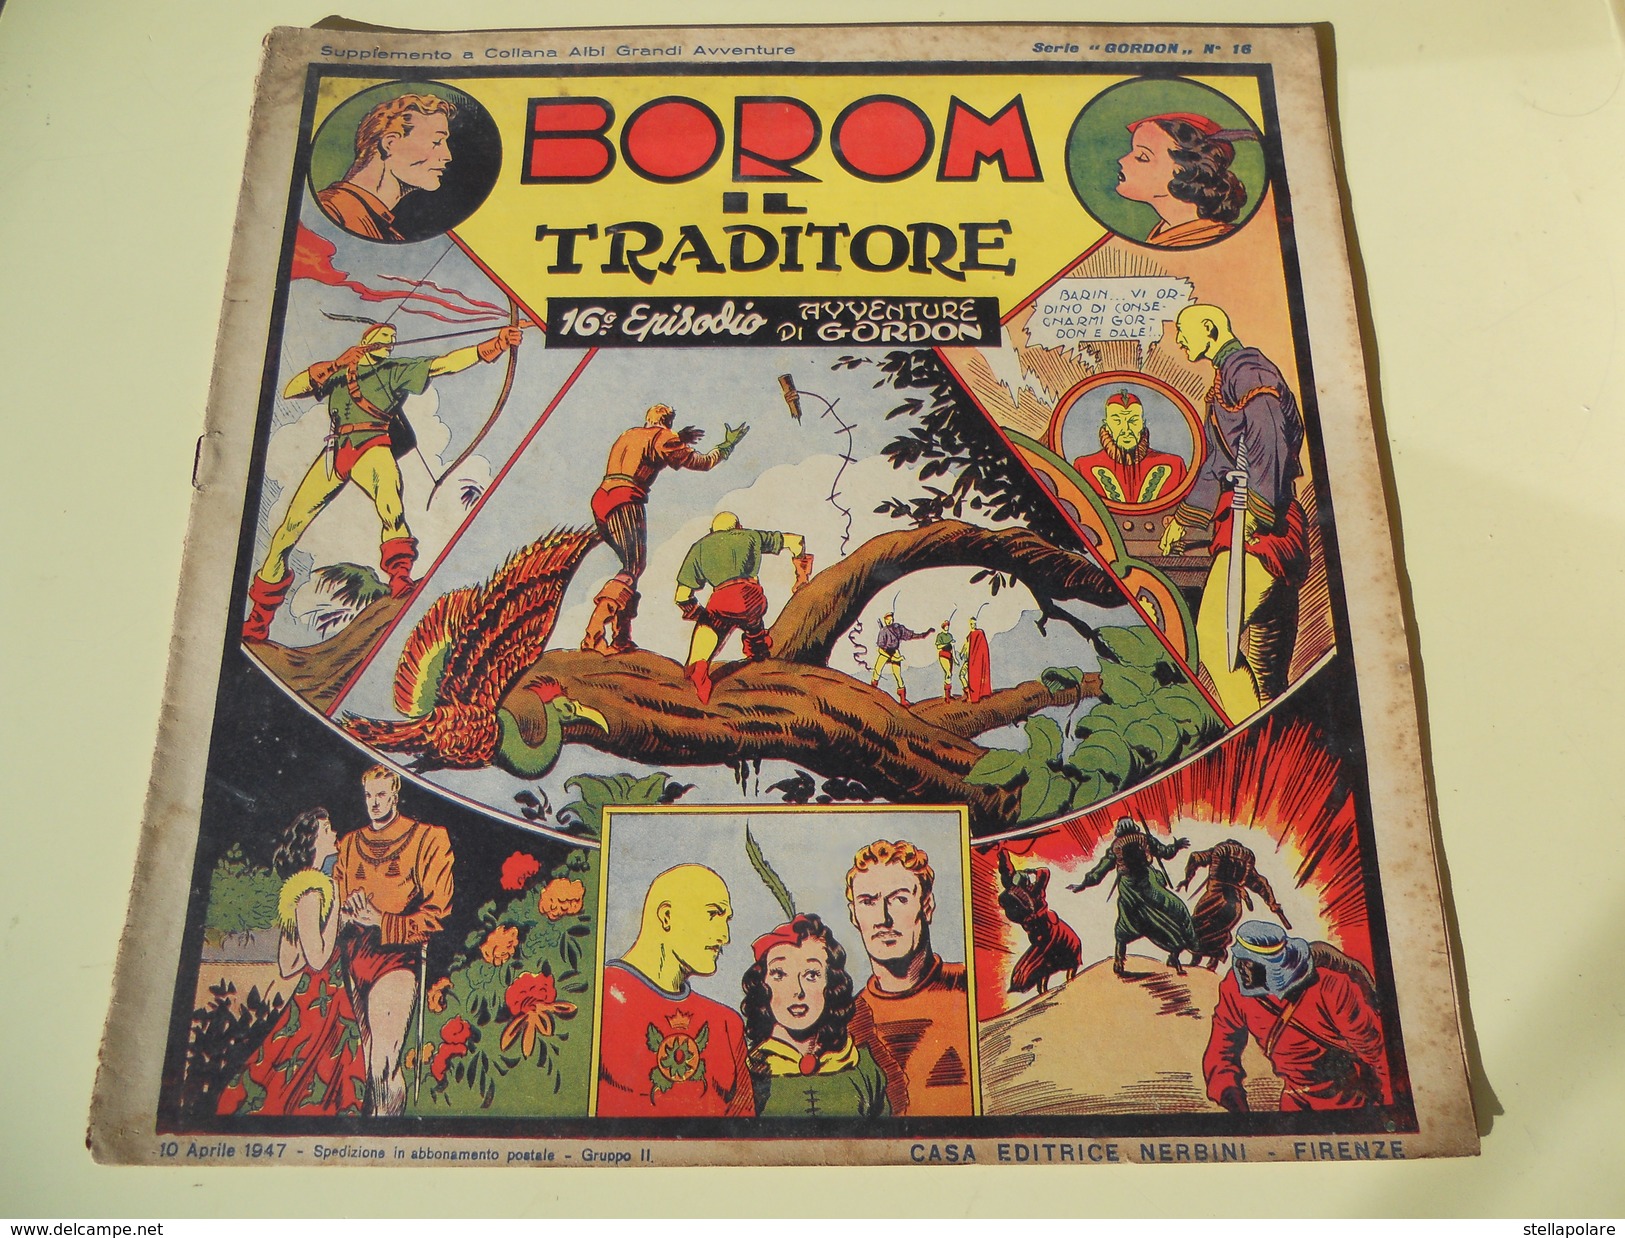 NERBINI - GRANDI AVVENTURE - SERIE GORDON N. 16 - BOROM IL TRADITORE - 1947 - Comics 1930-50